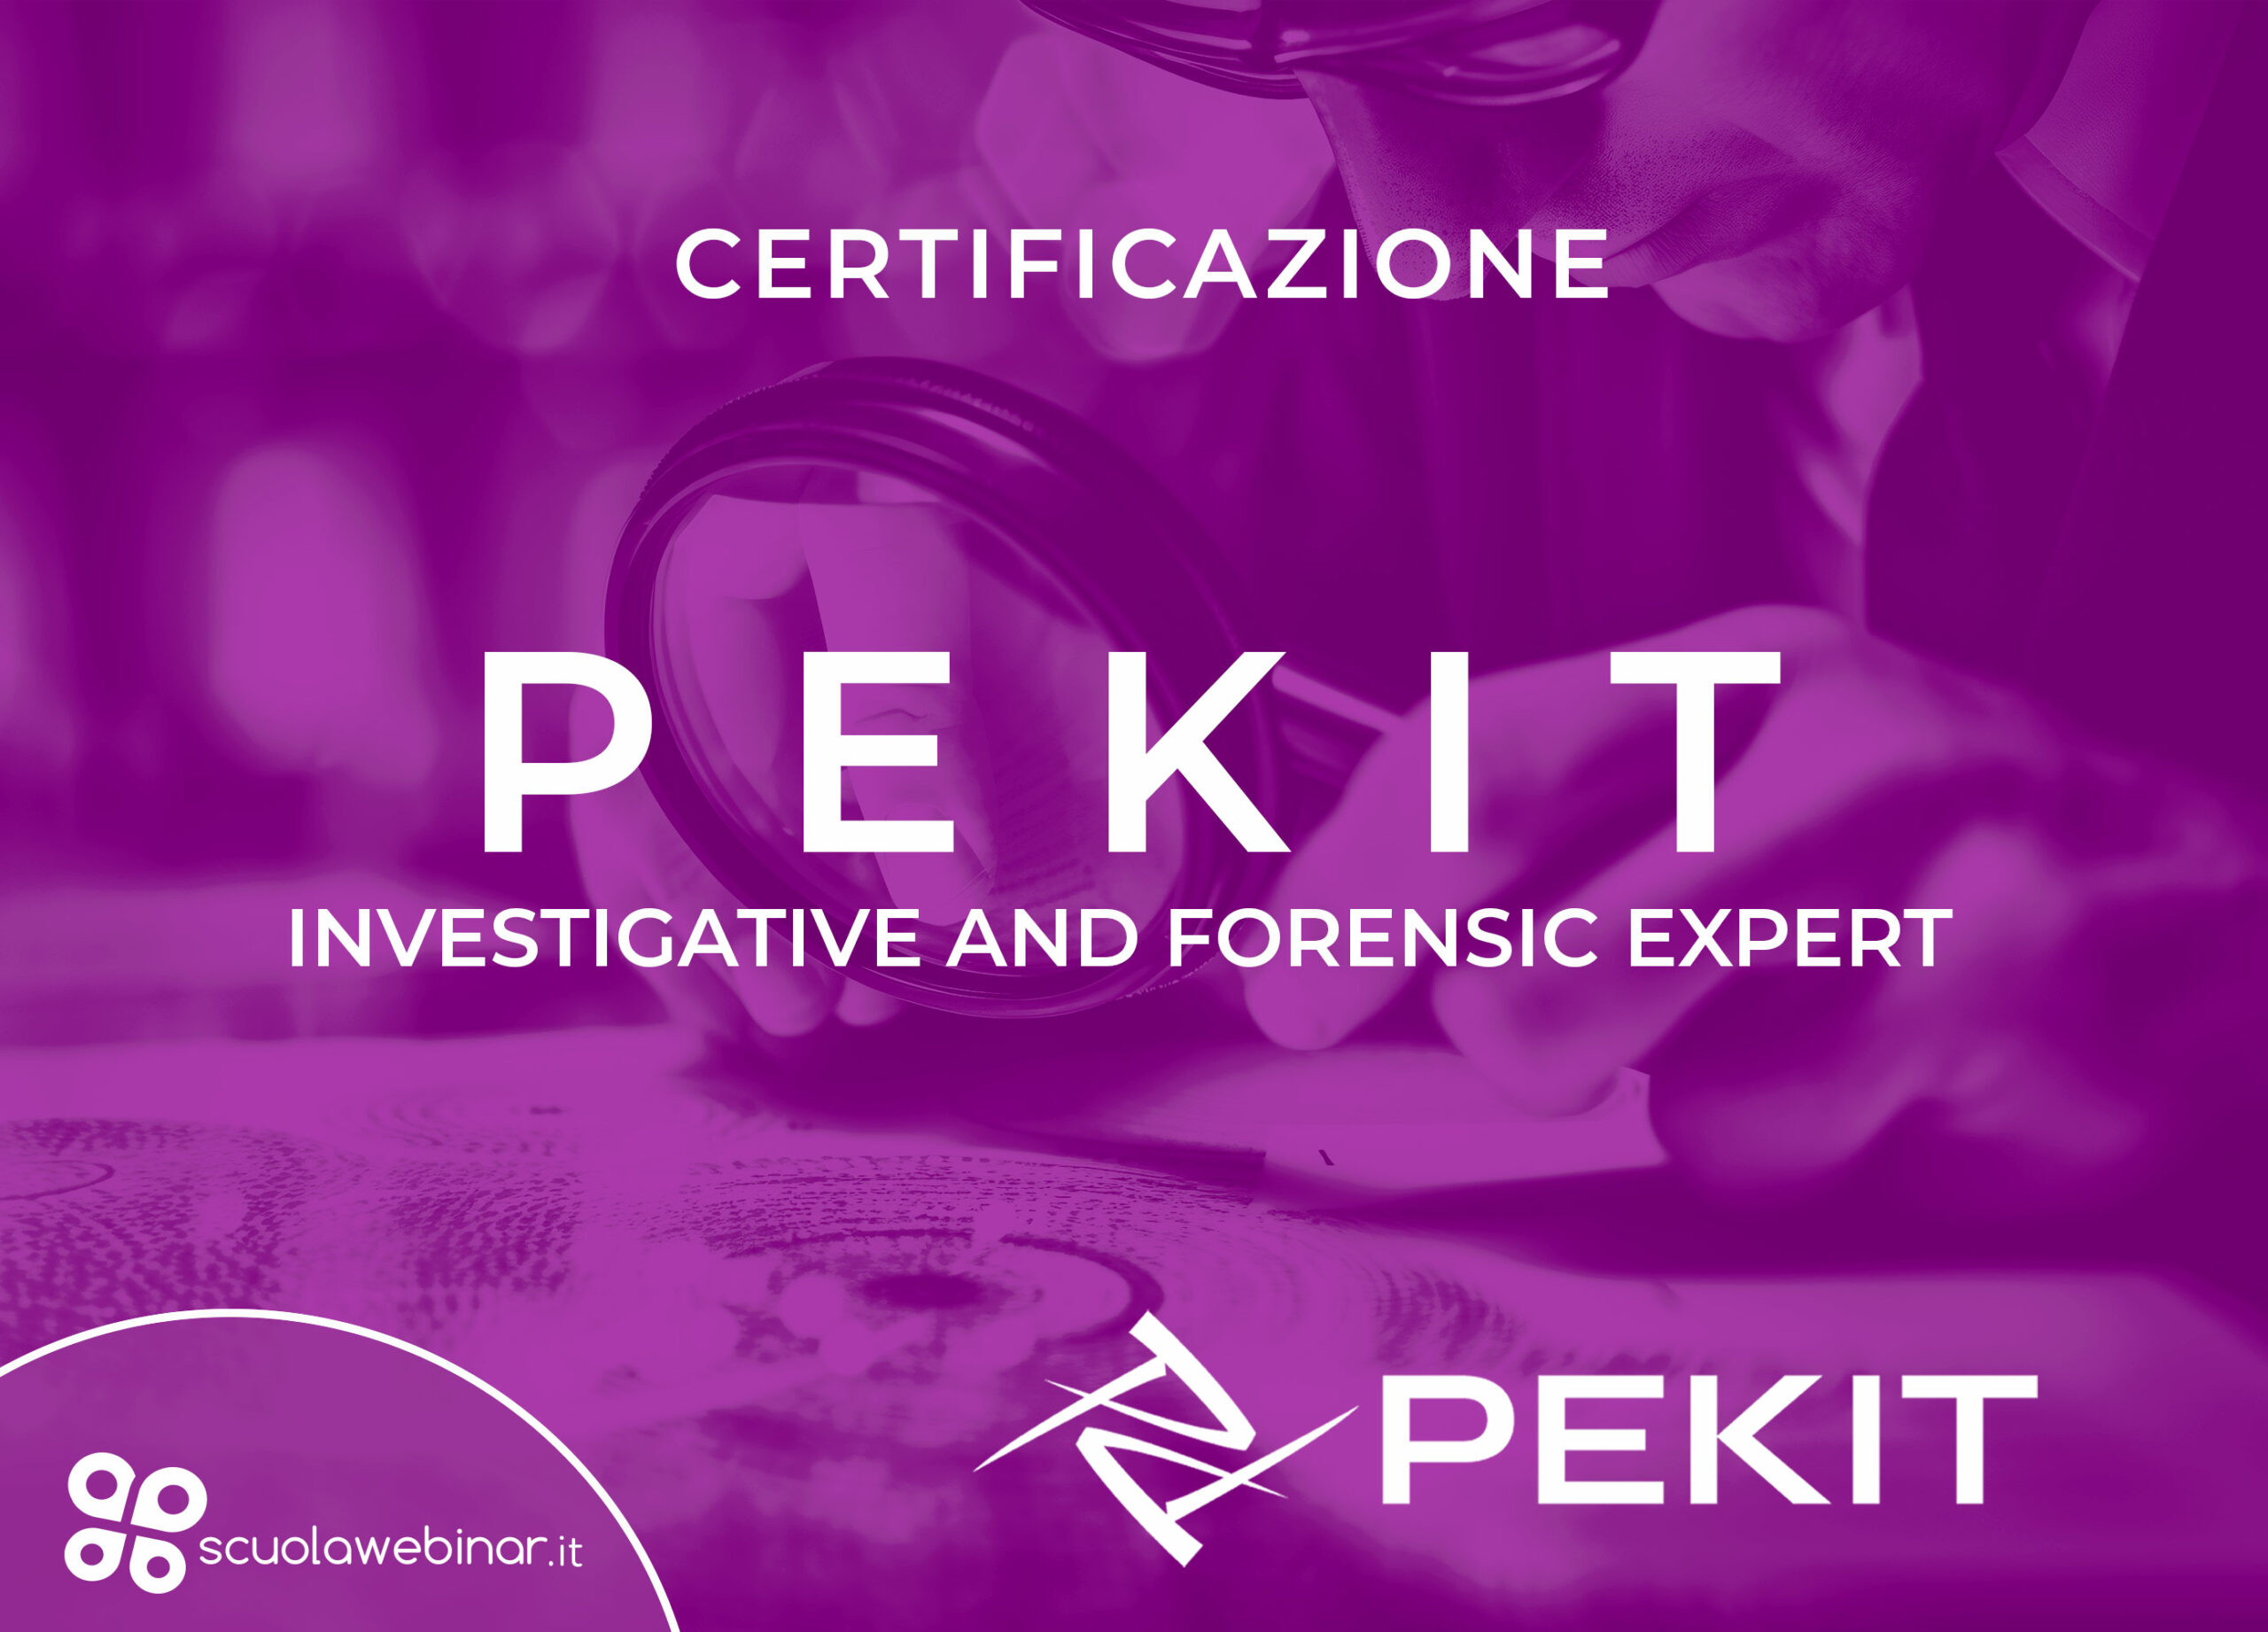 L’ottenimento della certificazione PEKIT Investigative and Forensic Expert. si ha con il conseguimento delle 4 certificazioni: